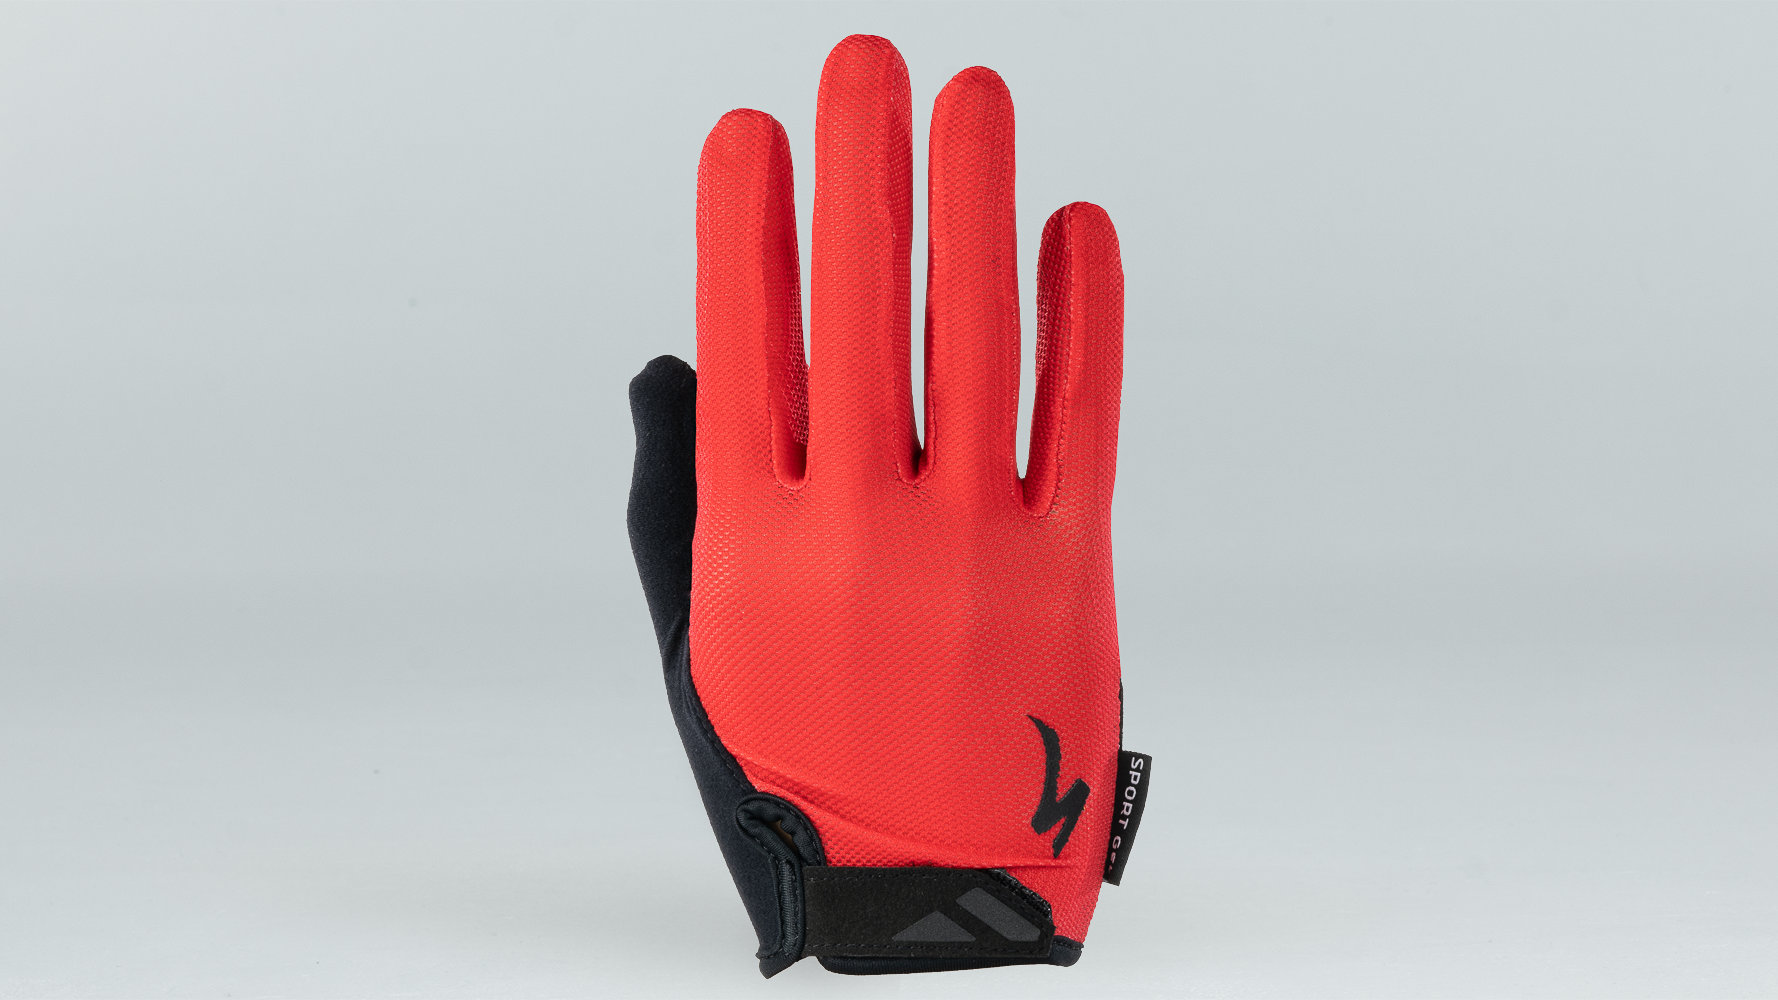 specialized bike gloves amazon